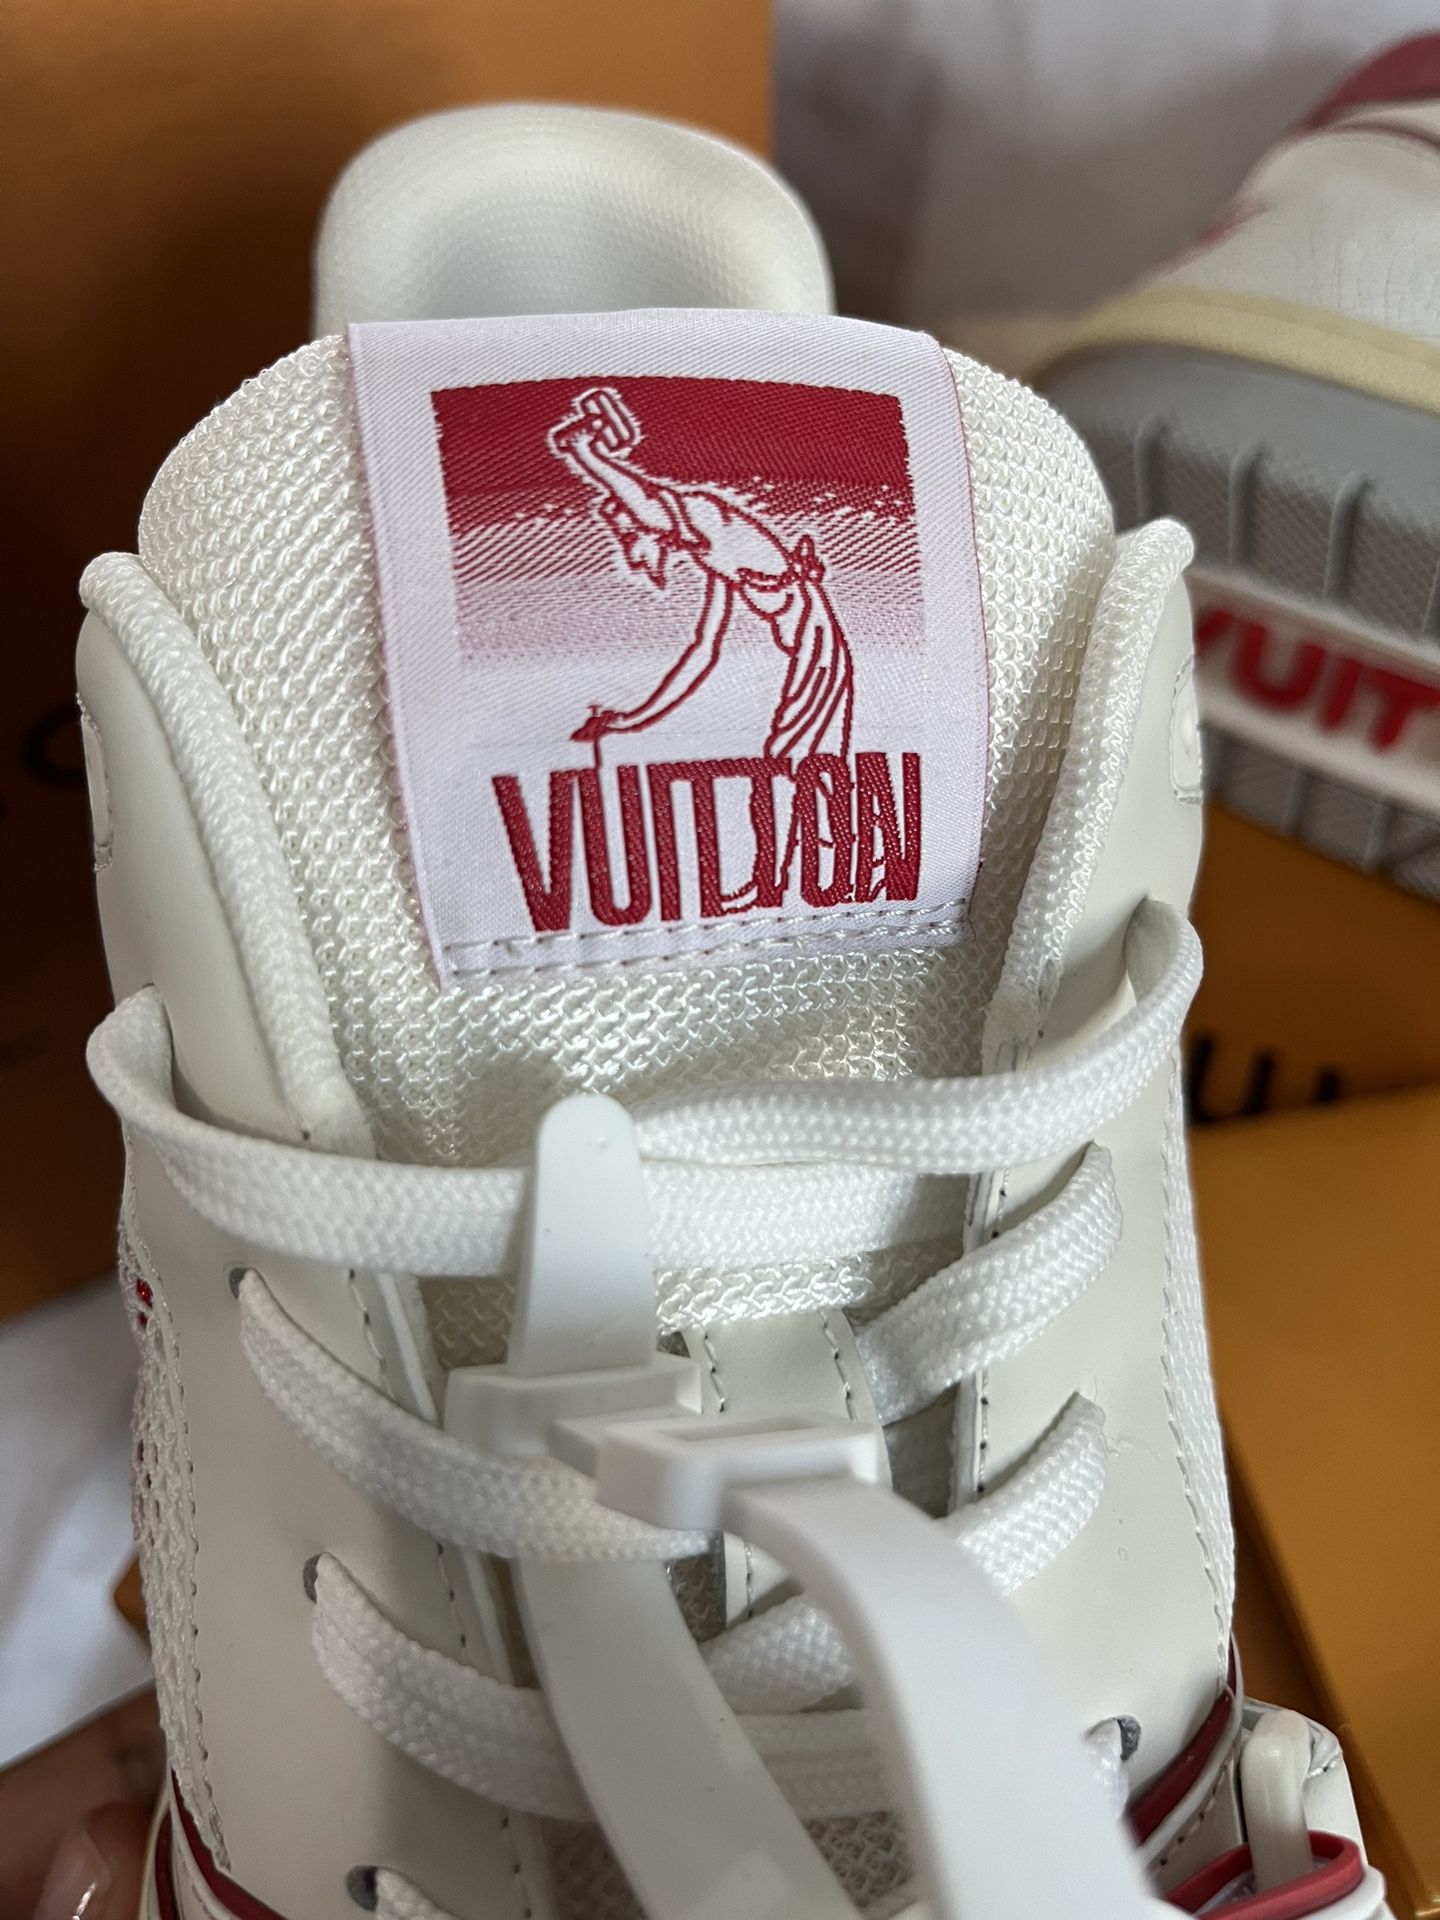 SALEOFF Louis Vuitton Trainer Red White Sneaker - USALast